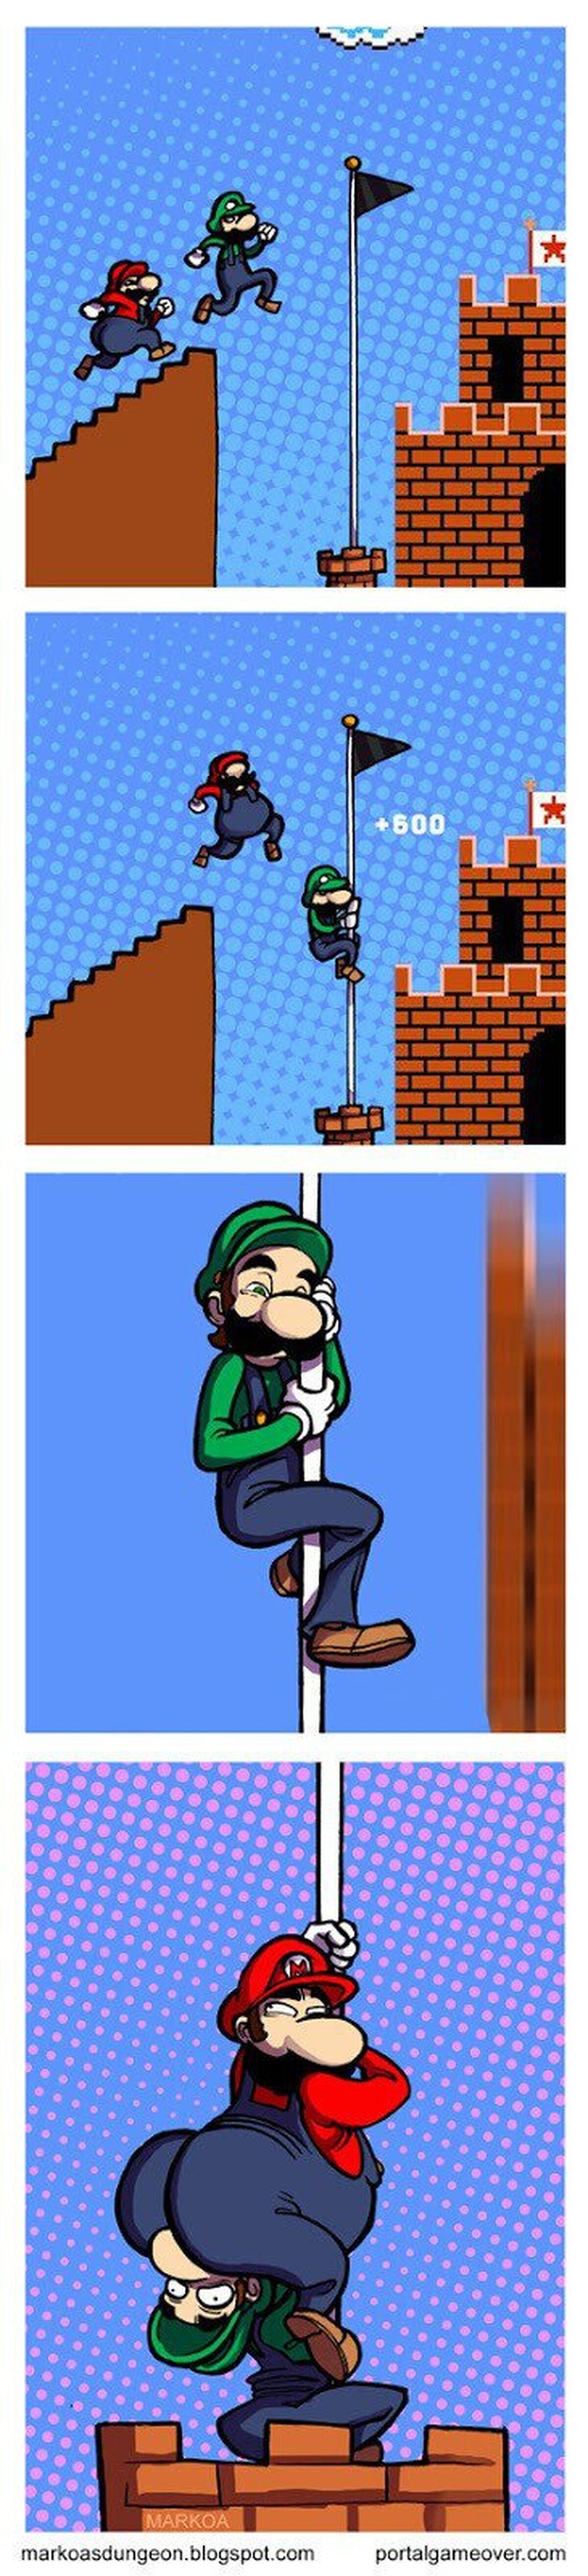 ¡Tú primero, Luigi!